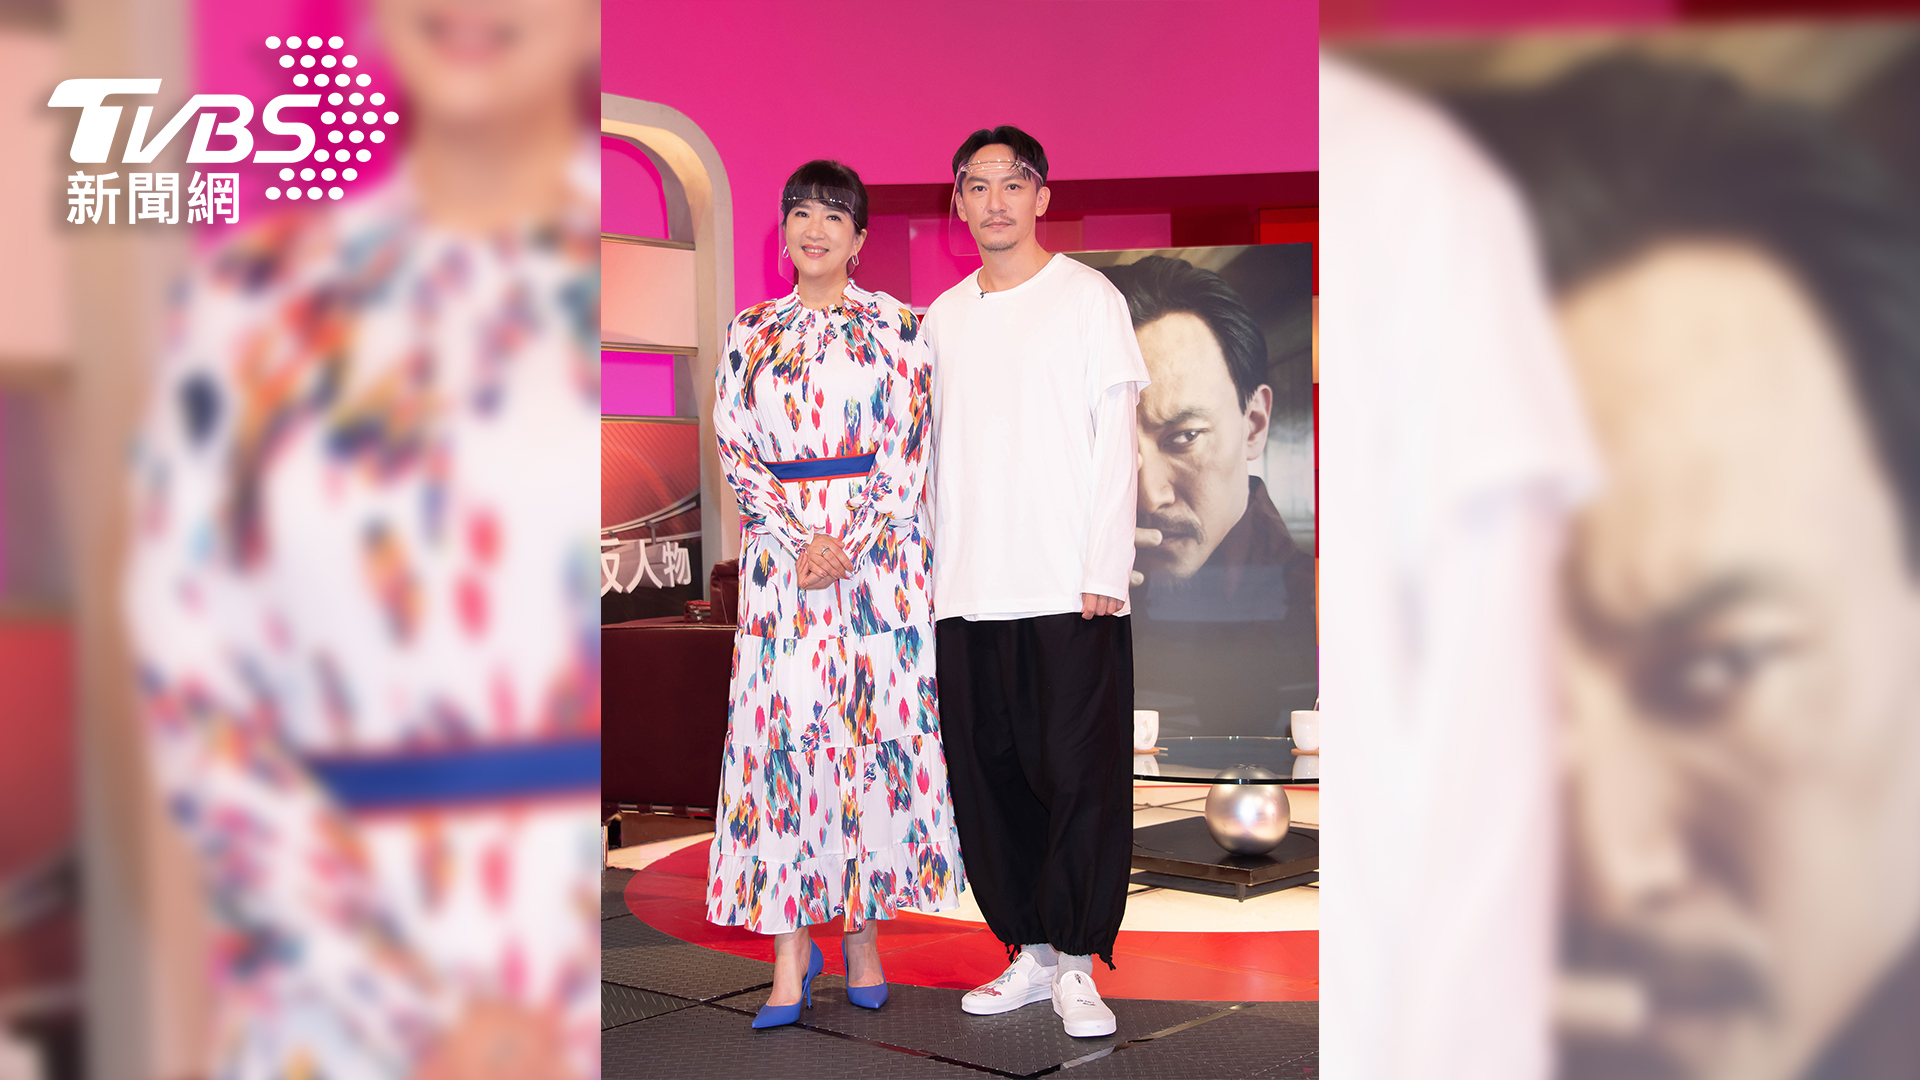 《TVBS看板人物》主持人方念華與國際影星張震合影